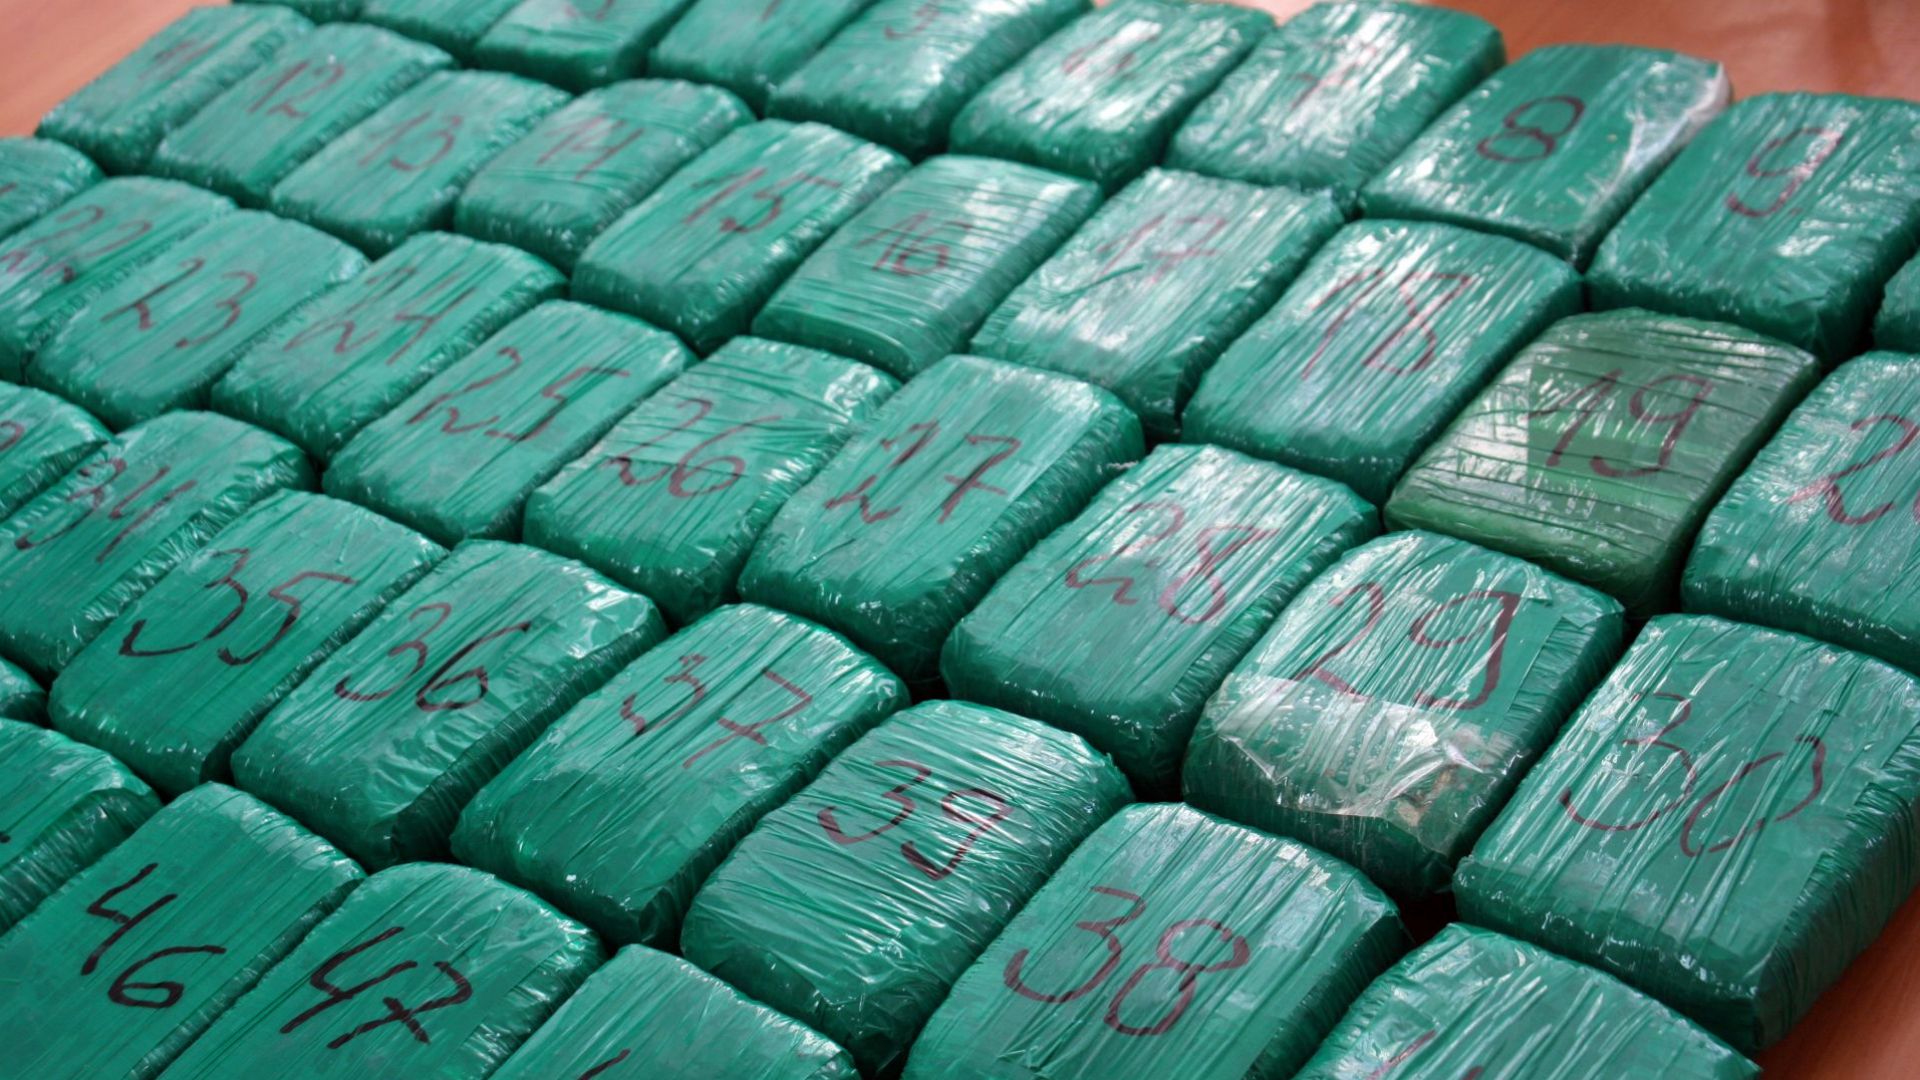 Над 100 килограма хероин е бил открит в кабината на